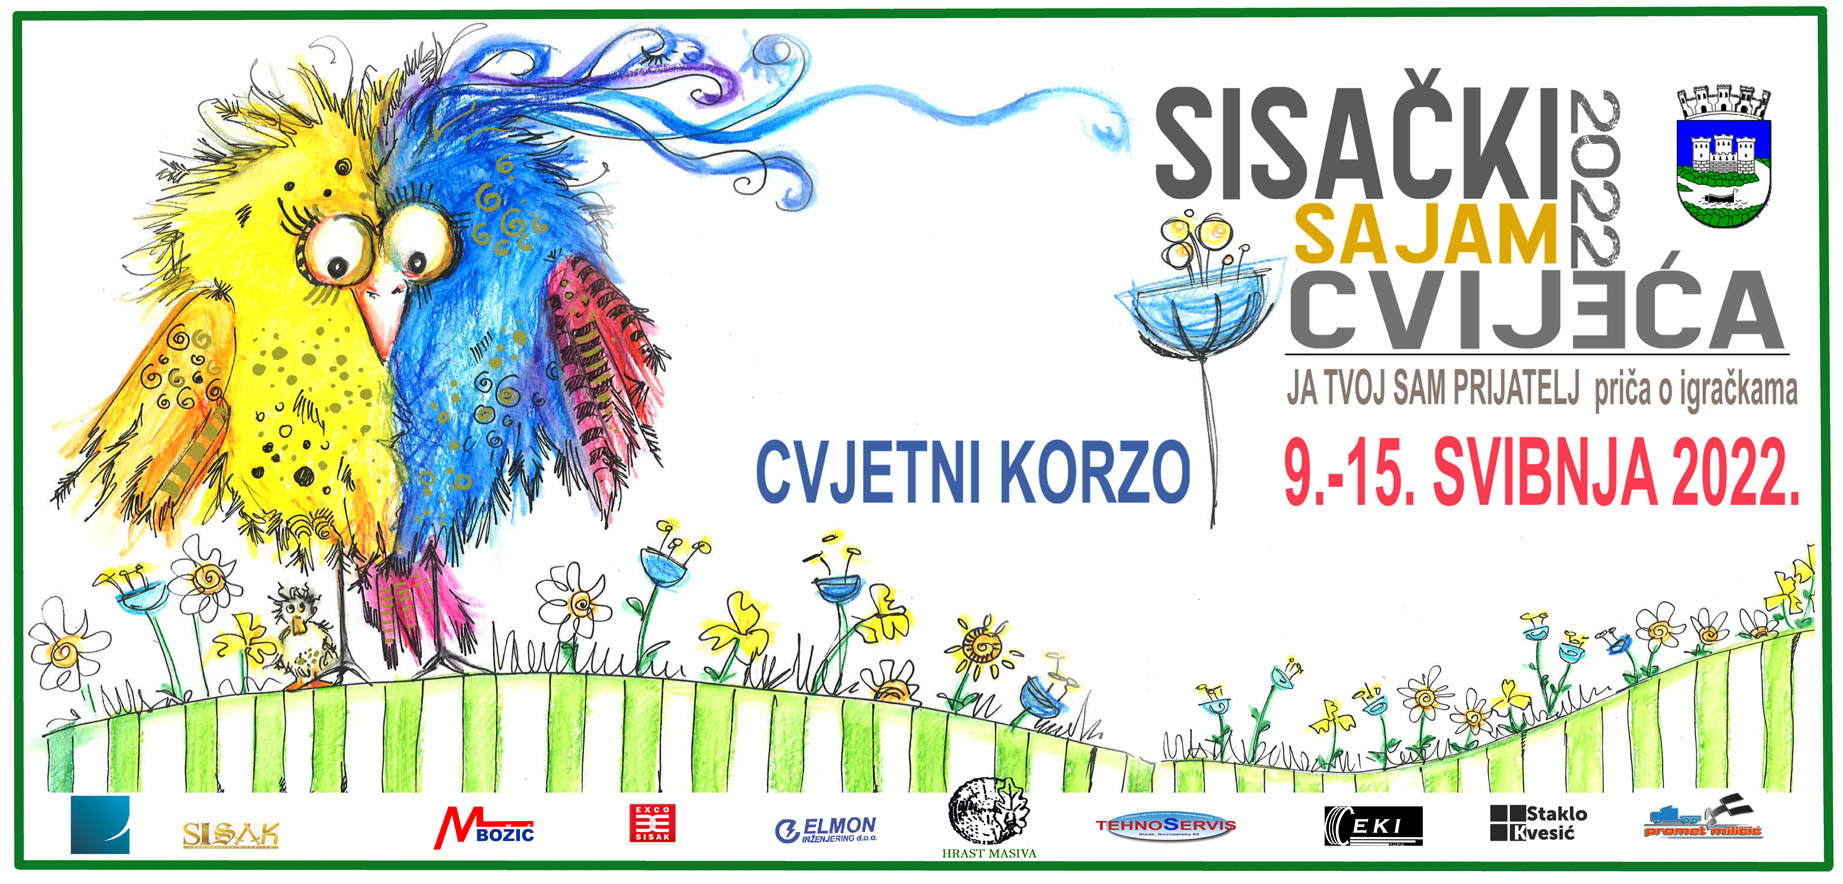 You are currently viewing Sisački sajam cvijeća 2022.